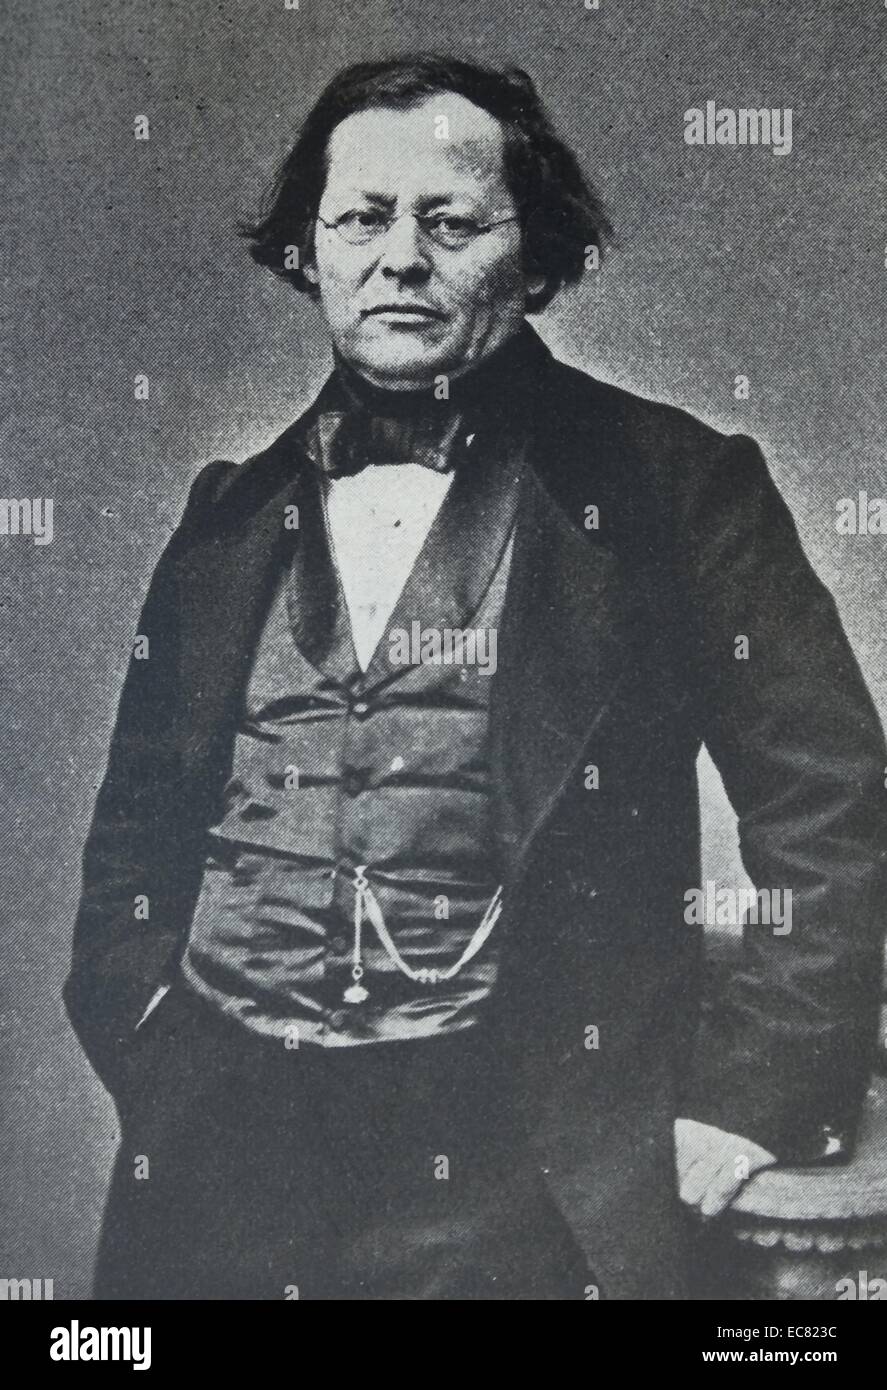 Joseph Škoda (10 dicembre 1805 - 13 giugno 1881) era un medico ceca, professore di medicina. Meglio conosciuto per essere uno dei co-fondatori della moderna scuola di Medicina di Vienna. Foto Stock